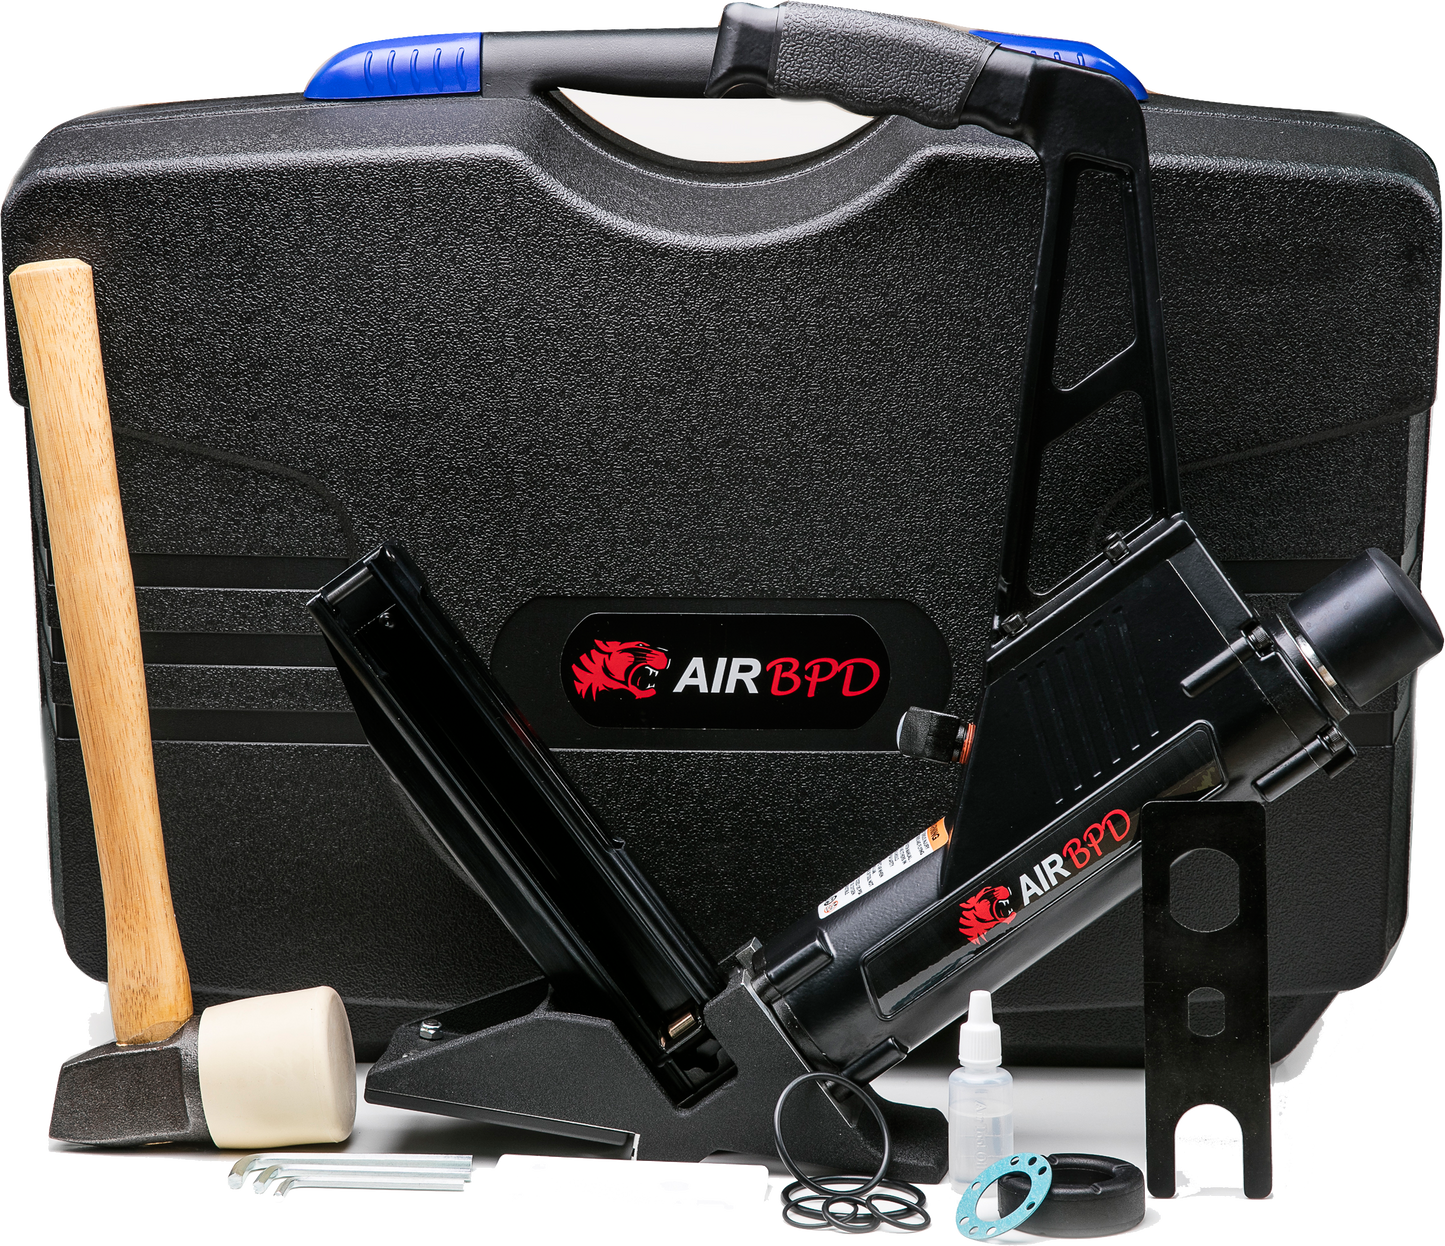 Air BPD 15 1/2 Gauge Flooring Stapler FS50C